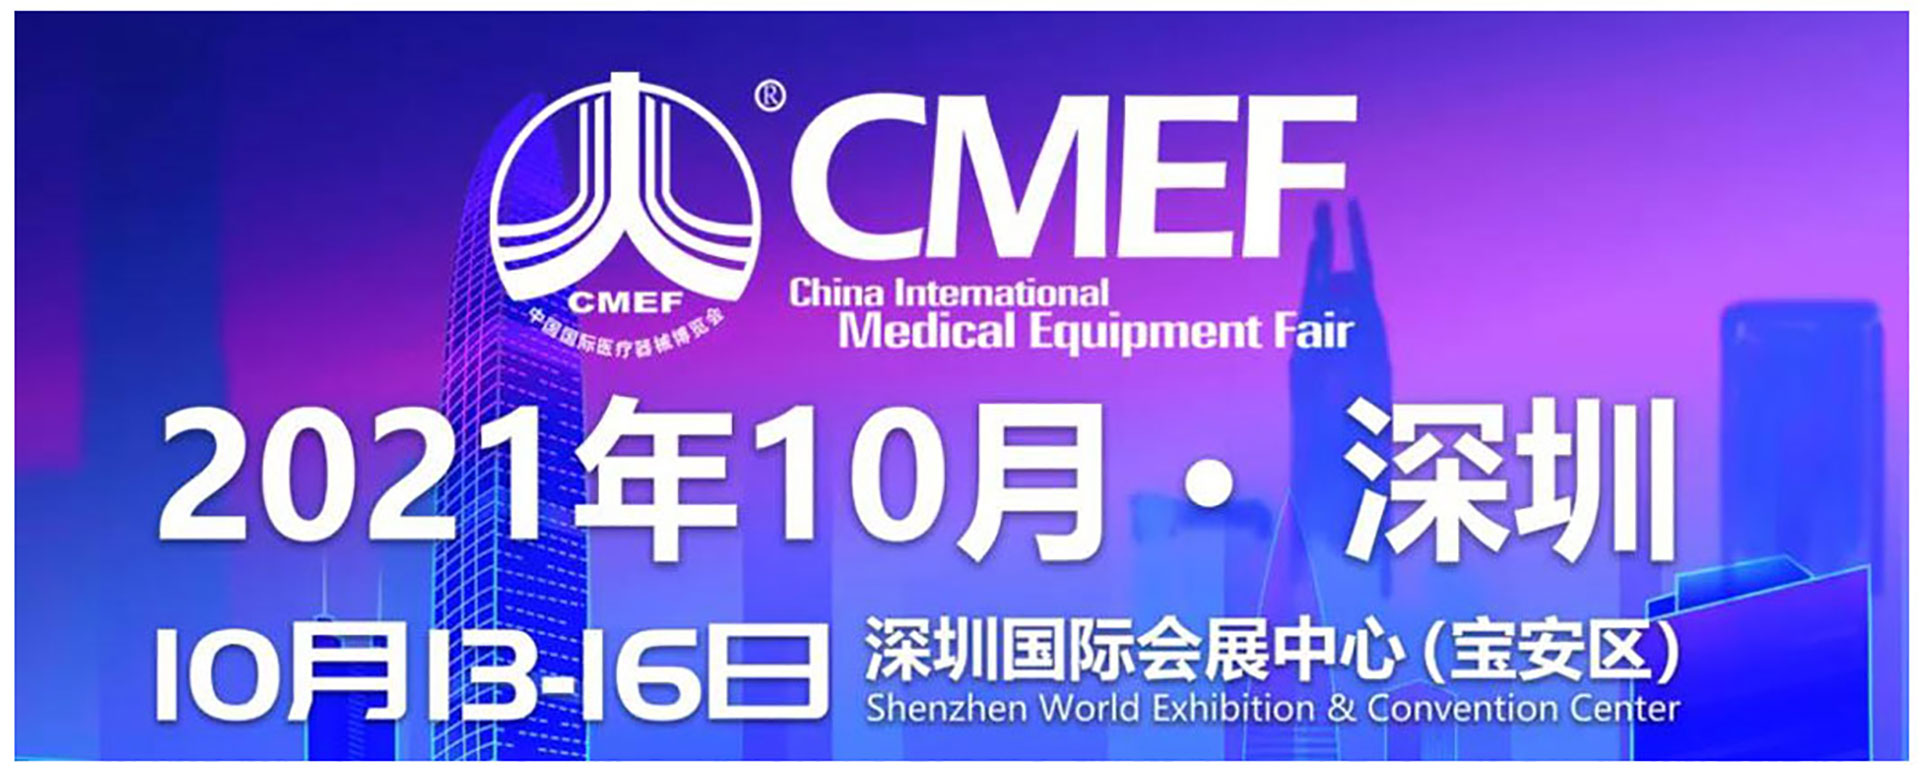 千帆竞发 行业盛会|丹大邀您参加第85届CMEF中国国际医疗器械（秋季）博览会